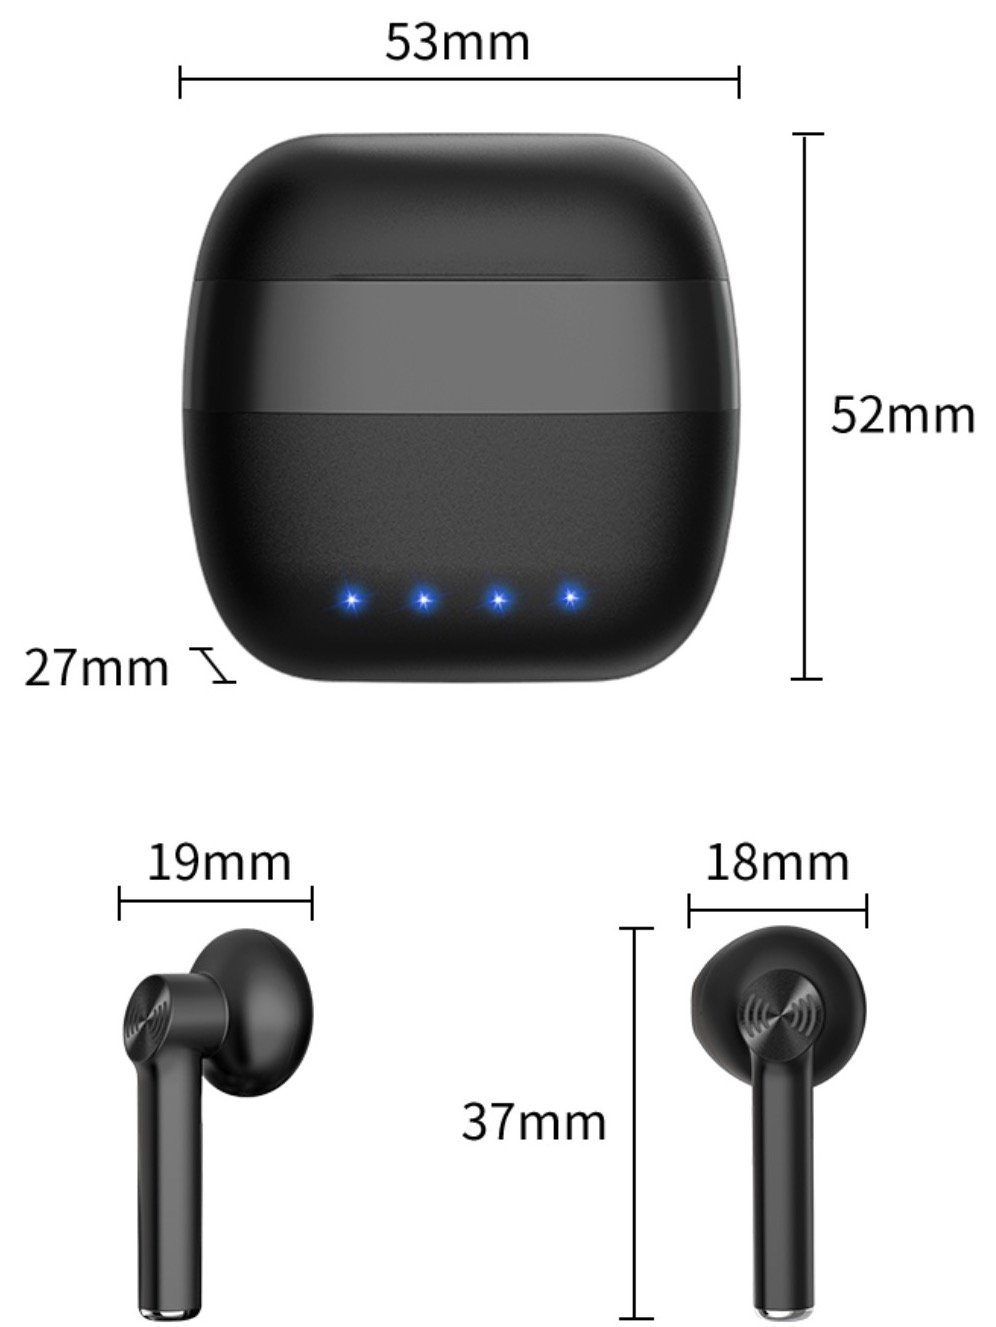 M2-Tec M35 Bluetooth-Kopfhörer tragbare Ladestation, Sprachsteuerung, Keine Anrufsteuerung, Drahtlos) Kabellos, In-Ear Schwarz (Musik, Musiksteuerung, Bluetooth